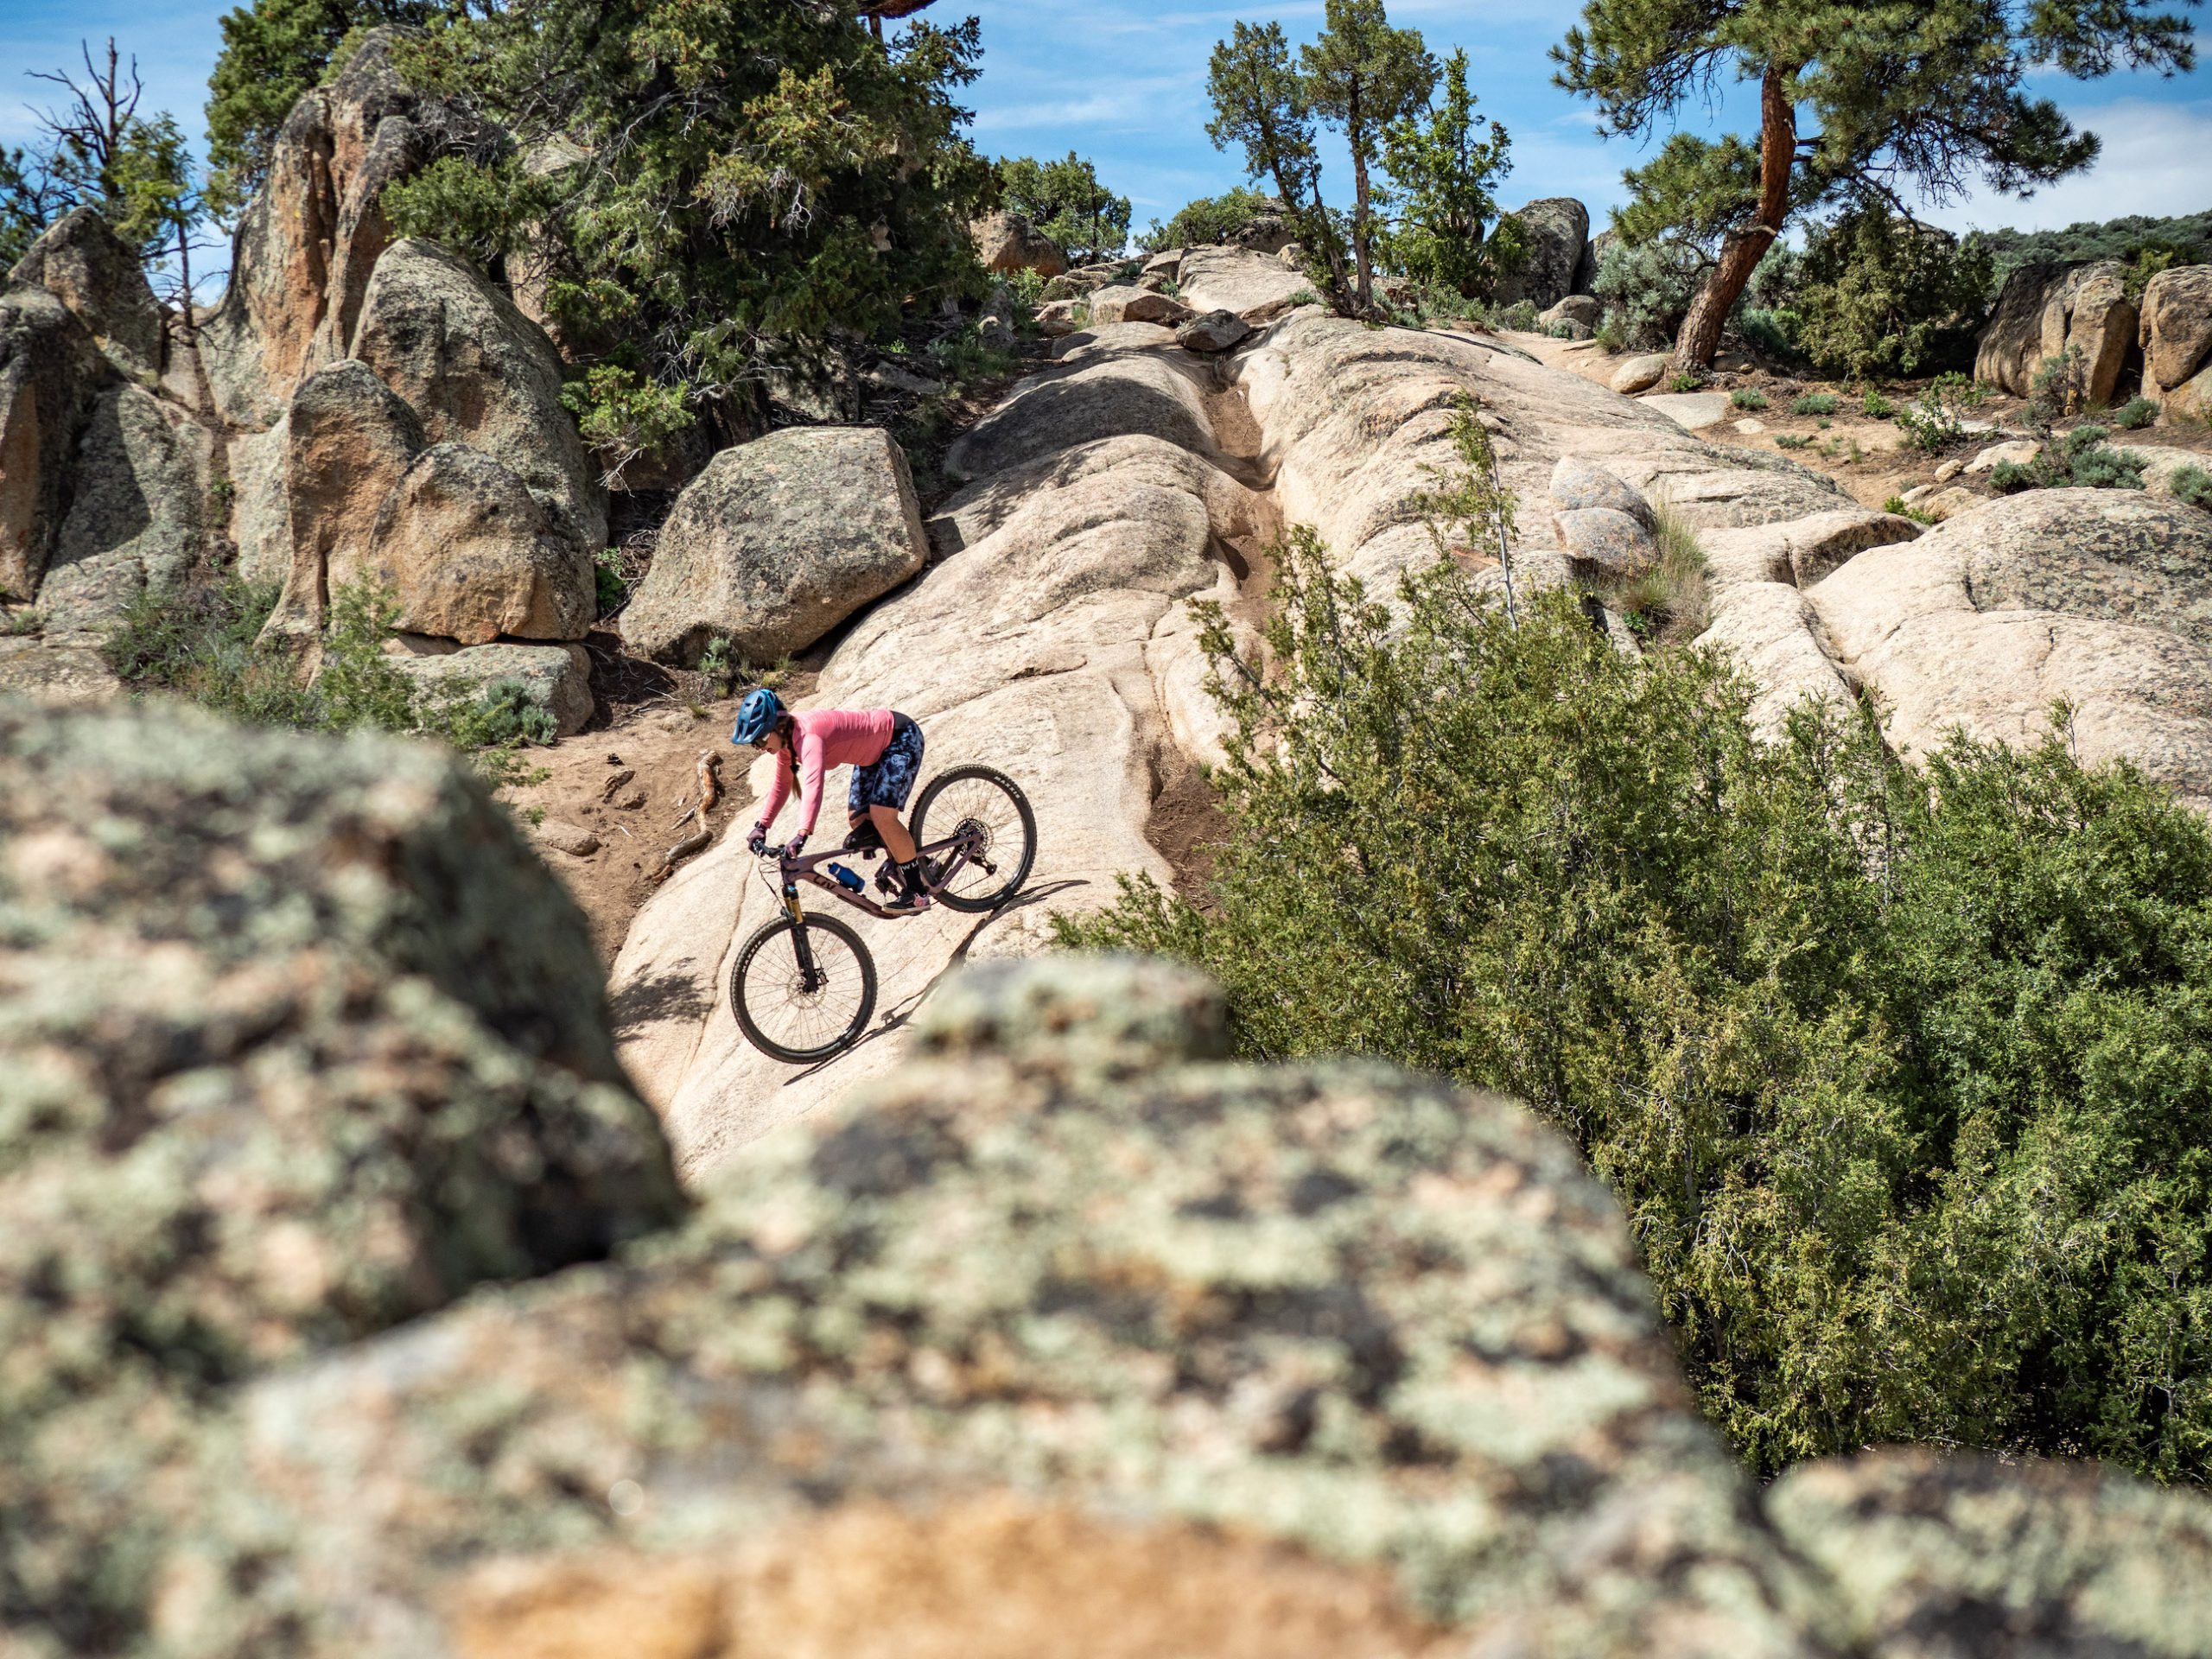 a mountain biker rides down a rocky slope